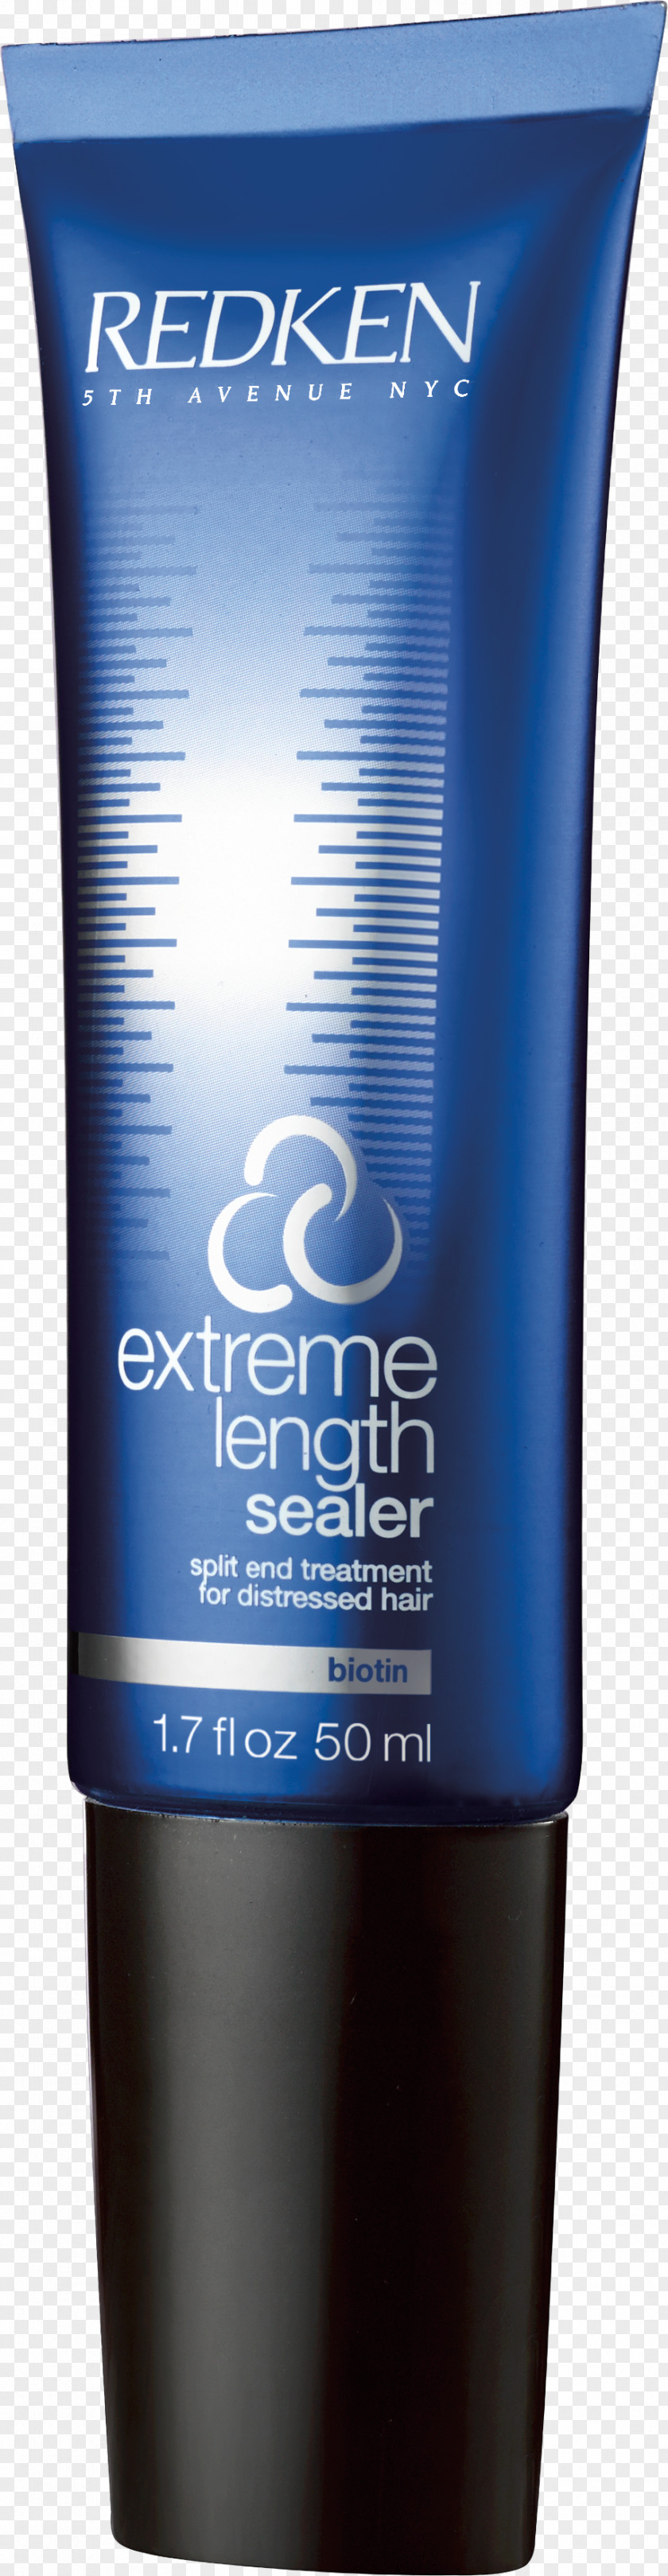 Hair Redken Extreme Length Sealer Split End Treatment Shampoo Primer Care PNG